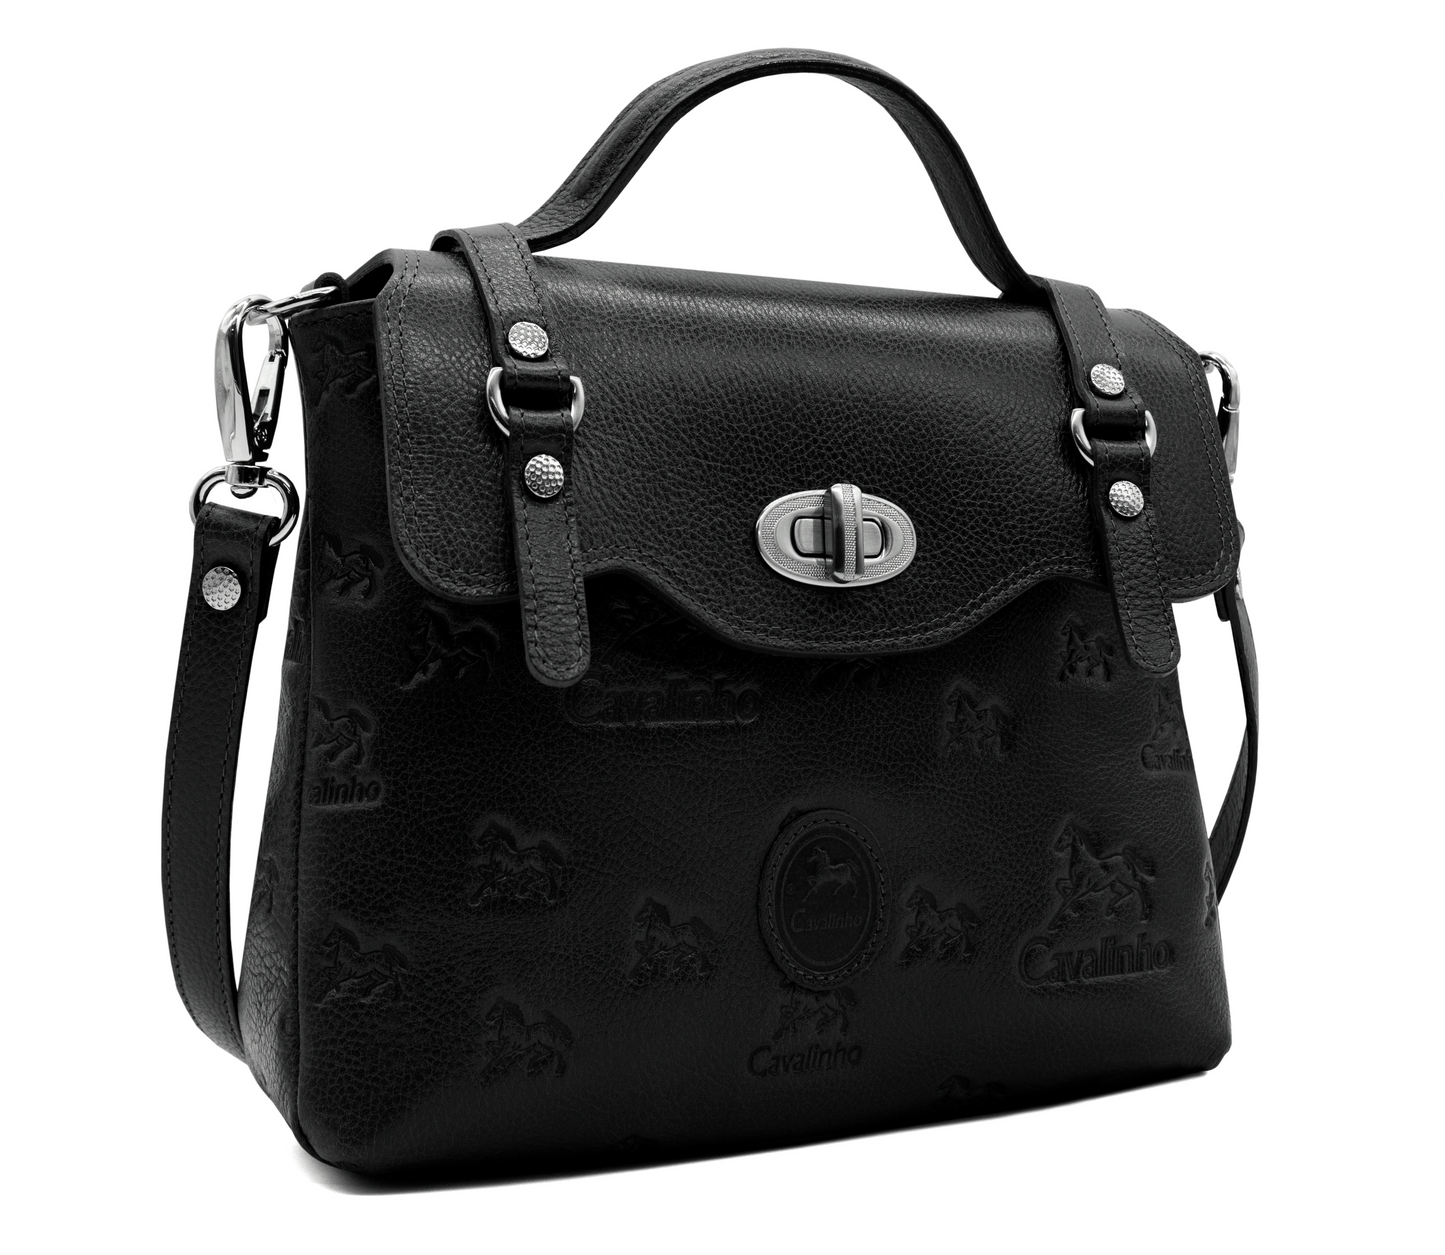 Cavalinho Signature Handbag - Black - 18090404.13_2